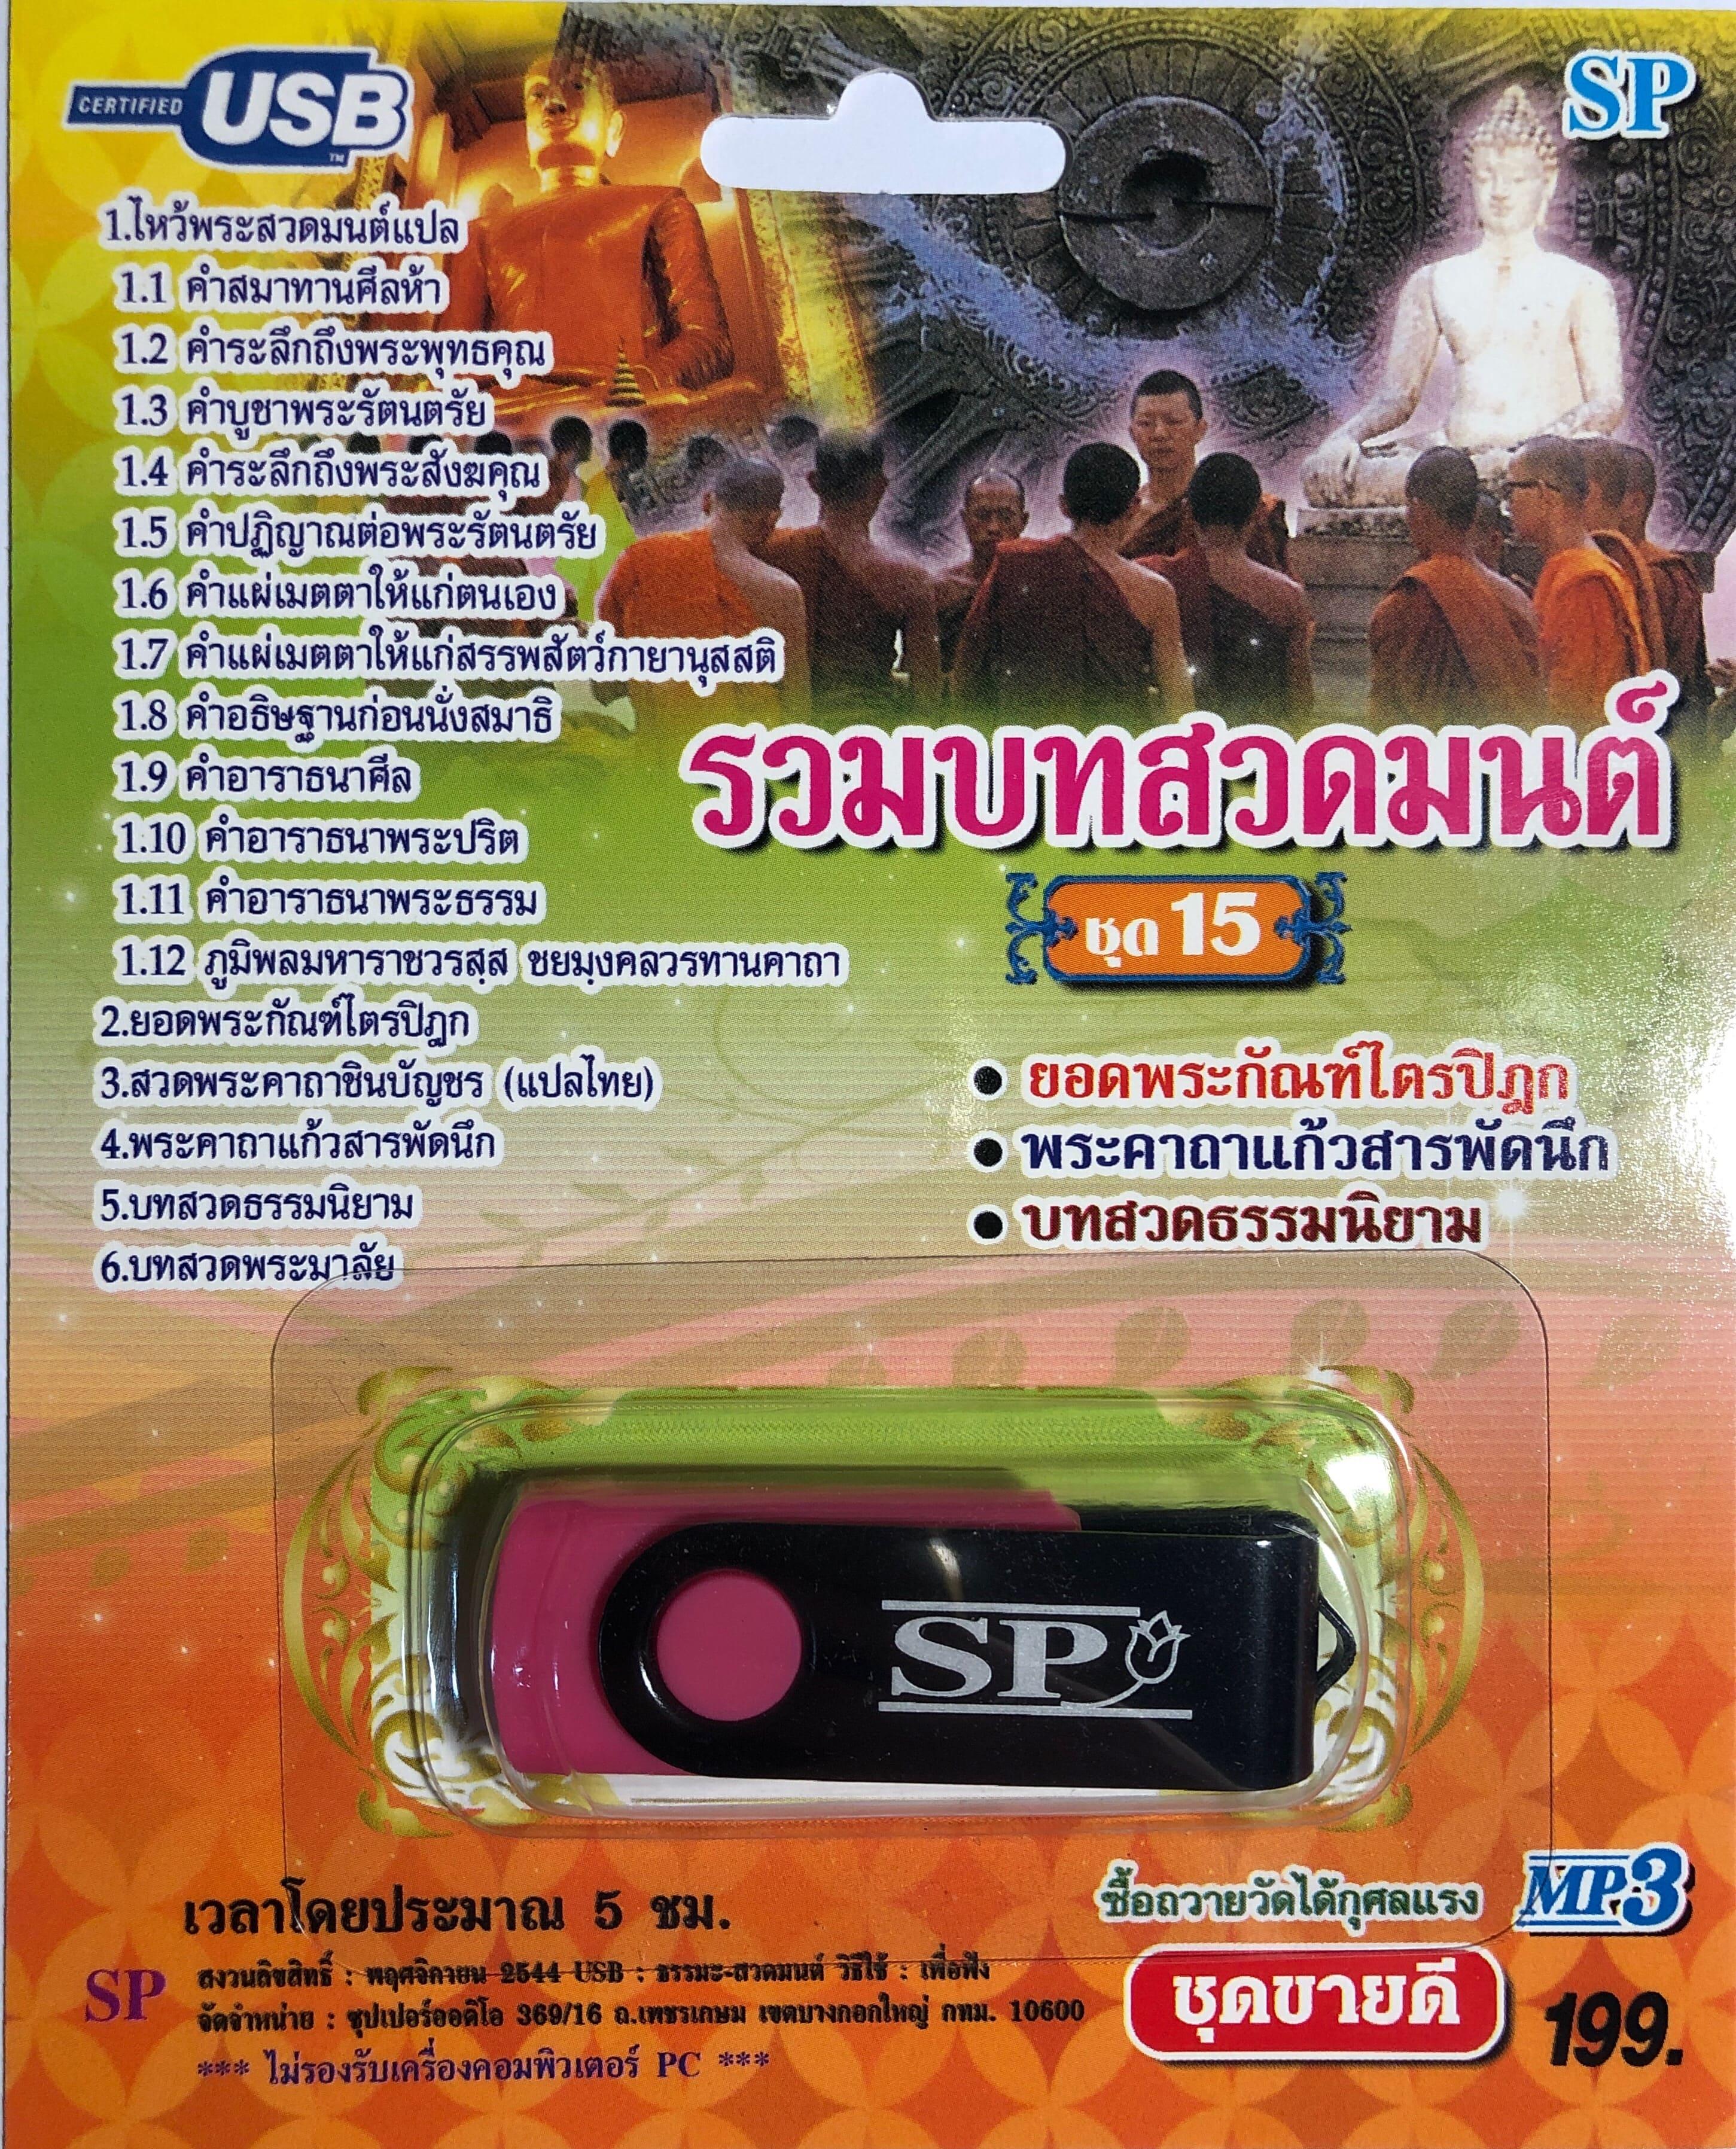 USB แฟลชไดร์ฟ Flash Drive เพลง MP3 รวมบทสวดมนต์ชุด 15